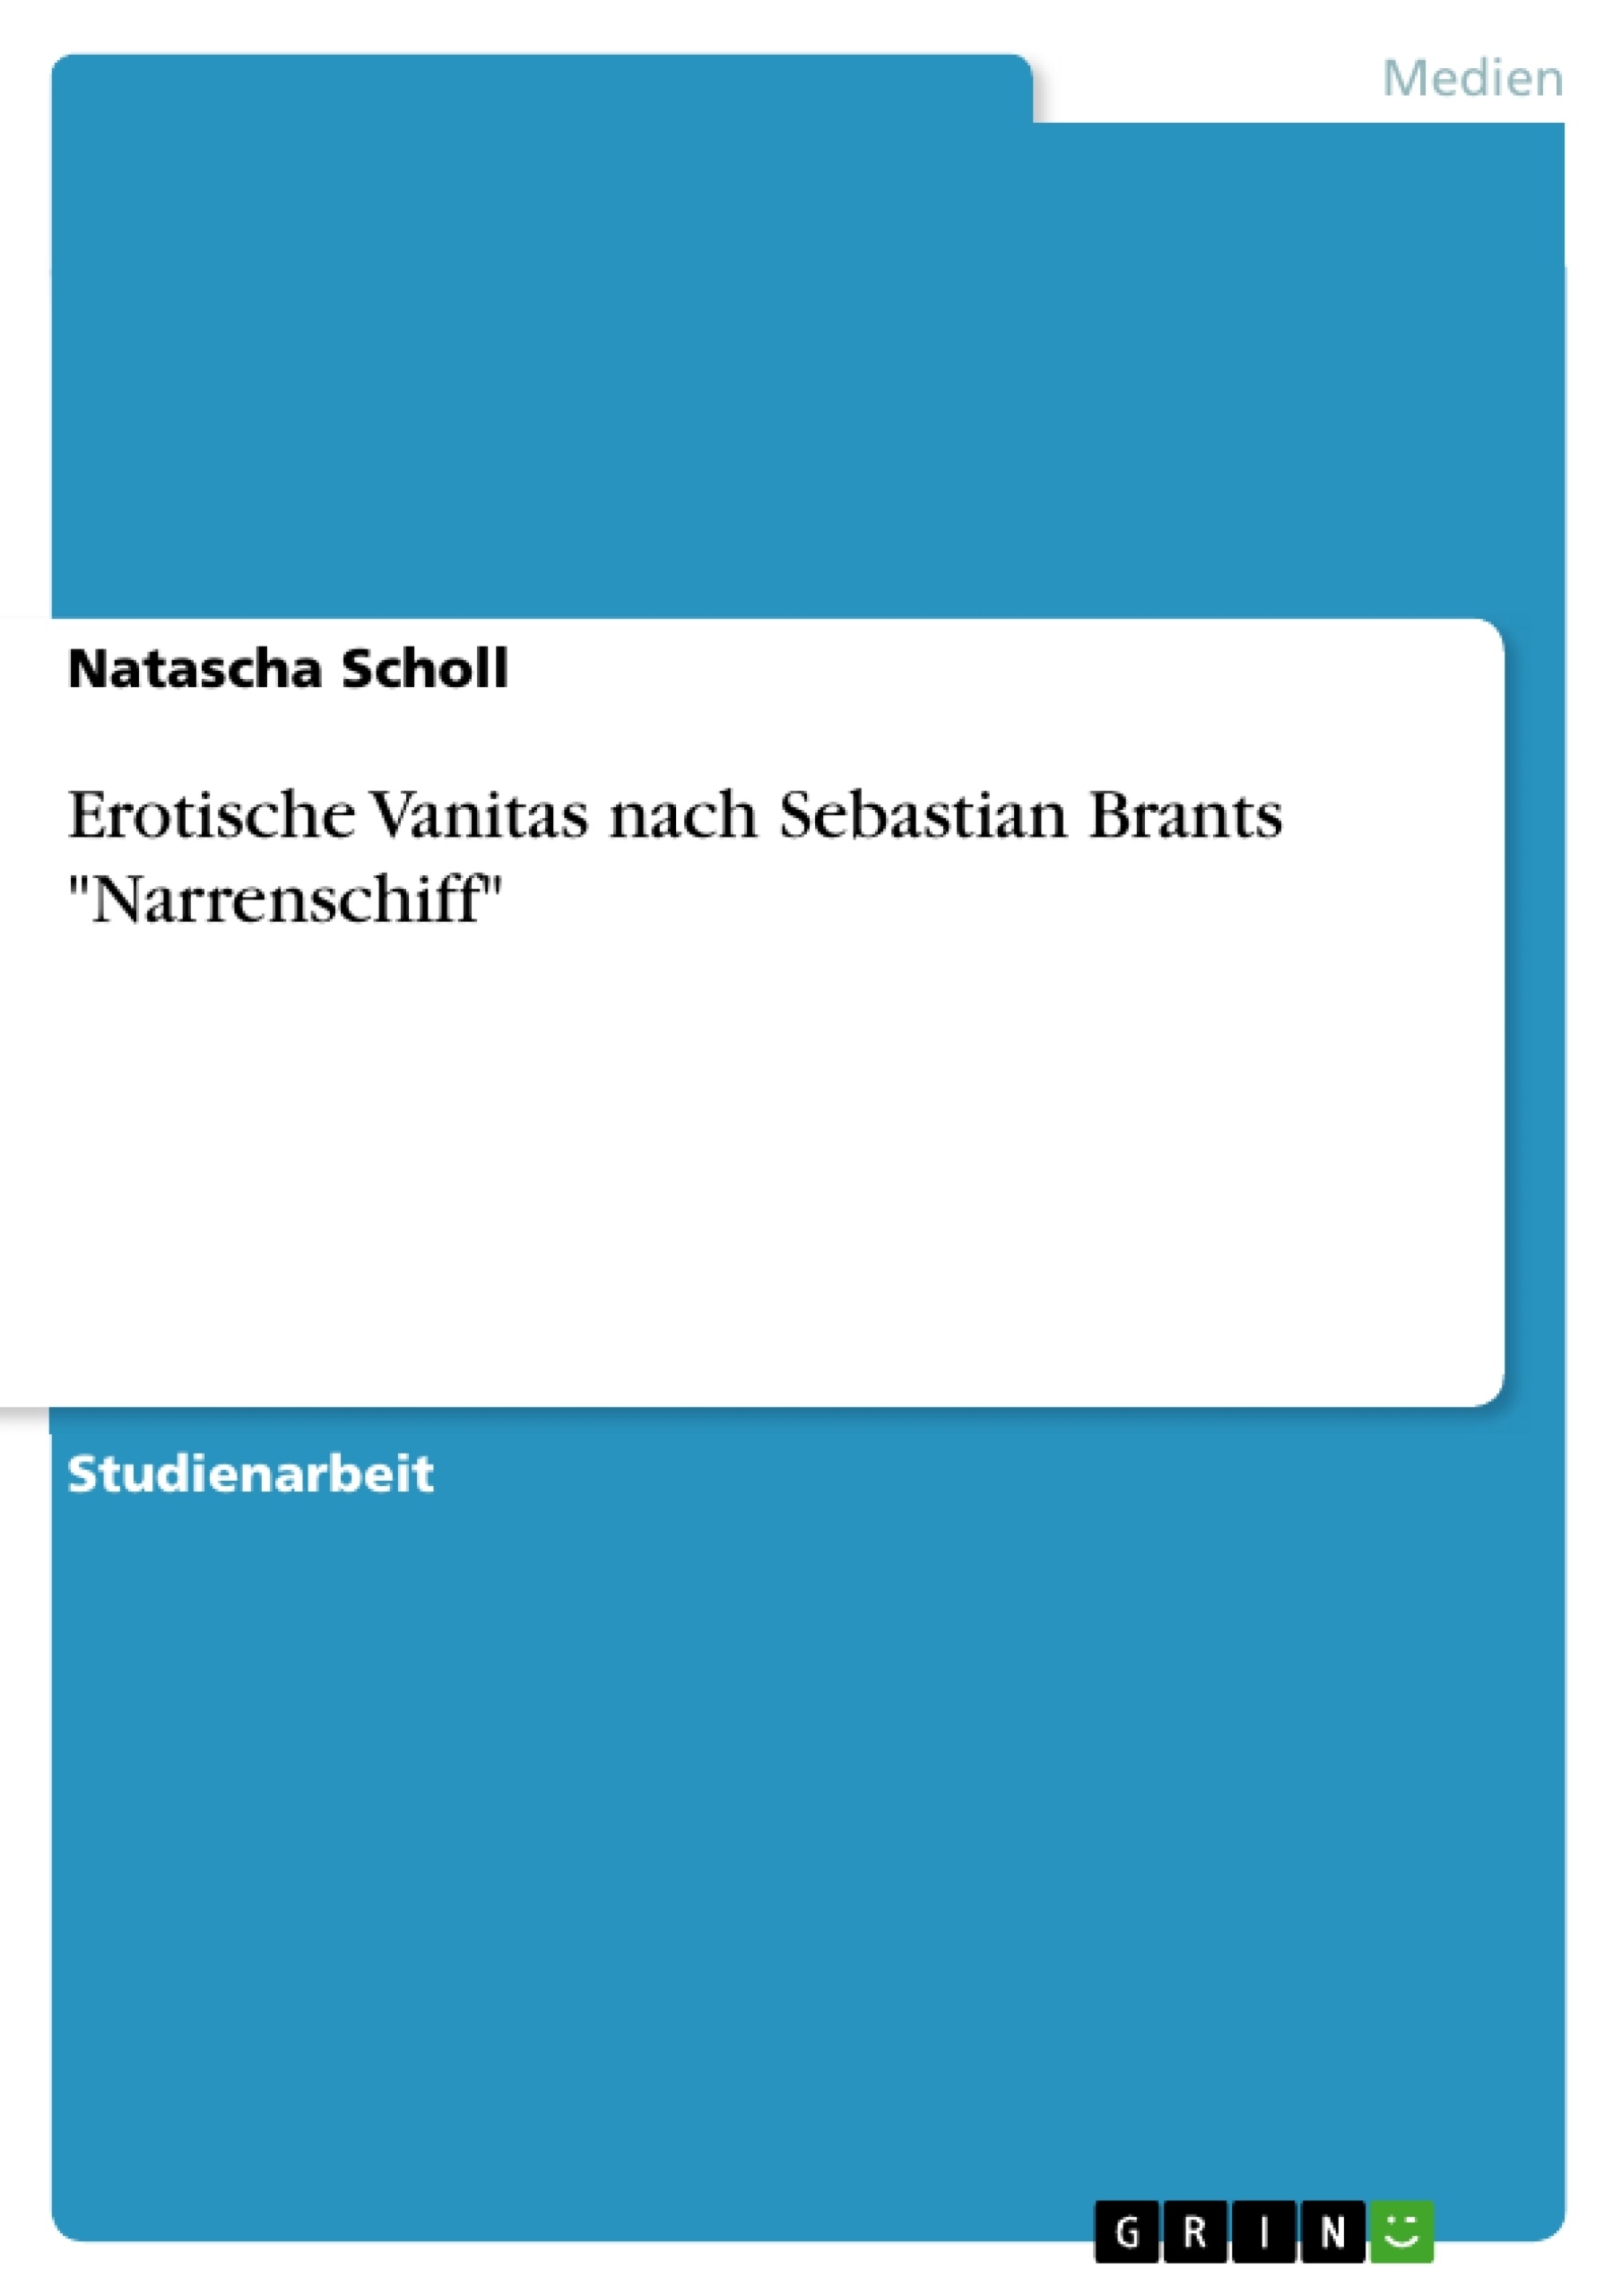 Título: Erotische Vanitas nach Sebastian Brants "Narrenschiff"